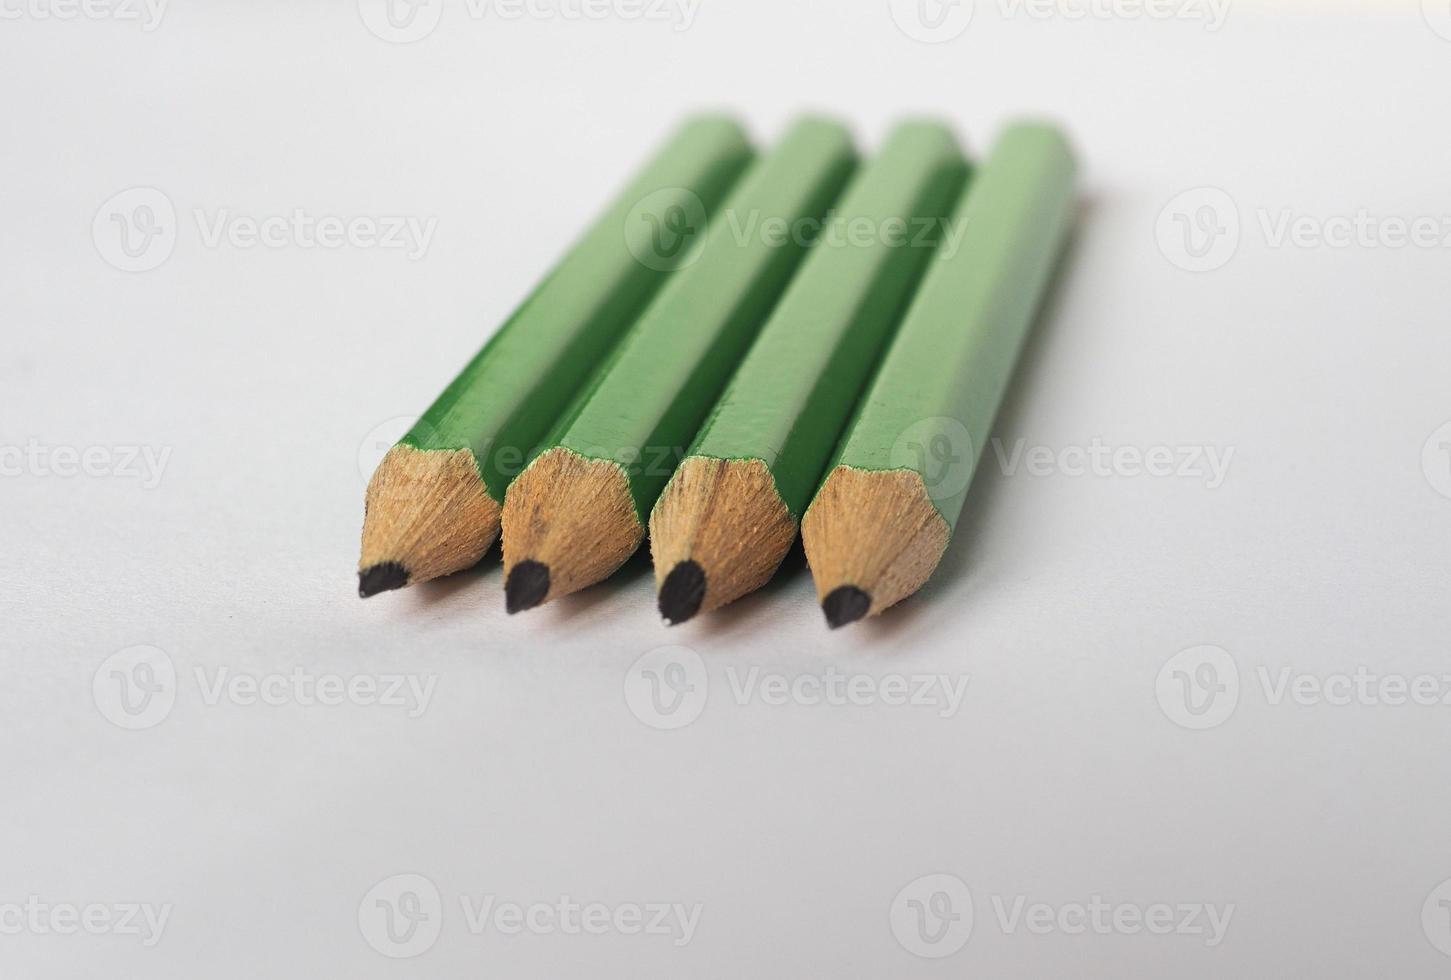 quattro verde matite su carta foglio foto